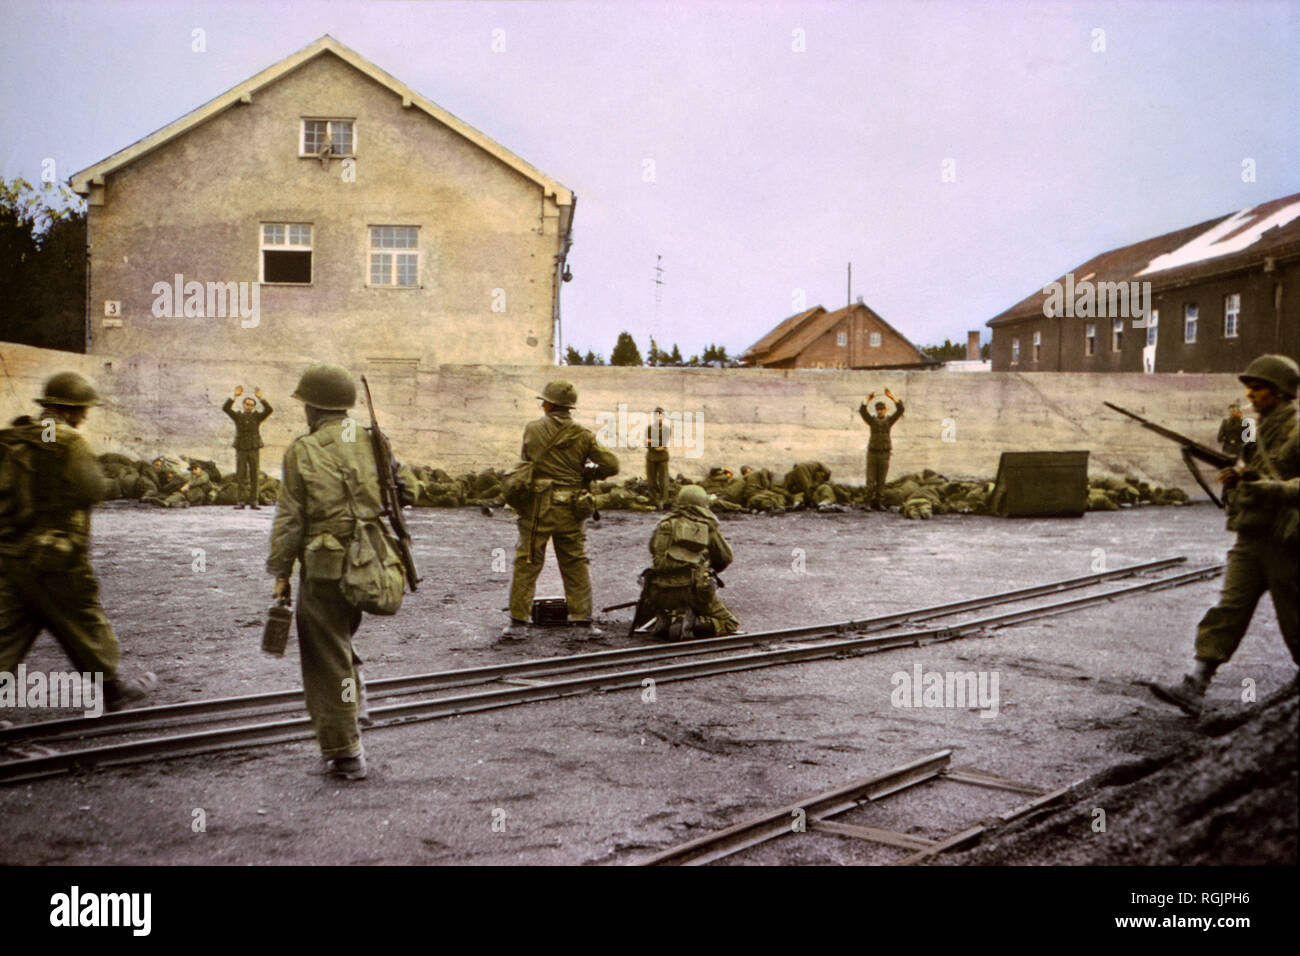 Catturare le guardie SS nel cantiere di carbone a una concentrazione di Camp da parte della 42a divisione di fanteria, U.S. Settimo esercito, Dachau, Germania, Europa Centrale Campagna, Western invasione alleata della Germania, Aprile 1945 Foto Stock